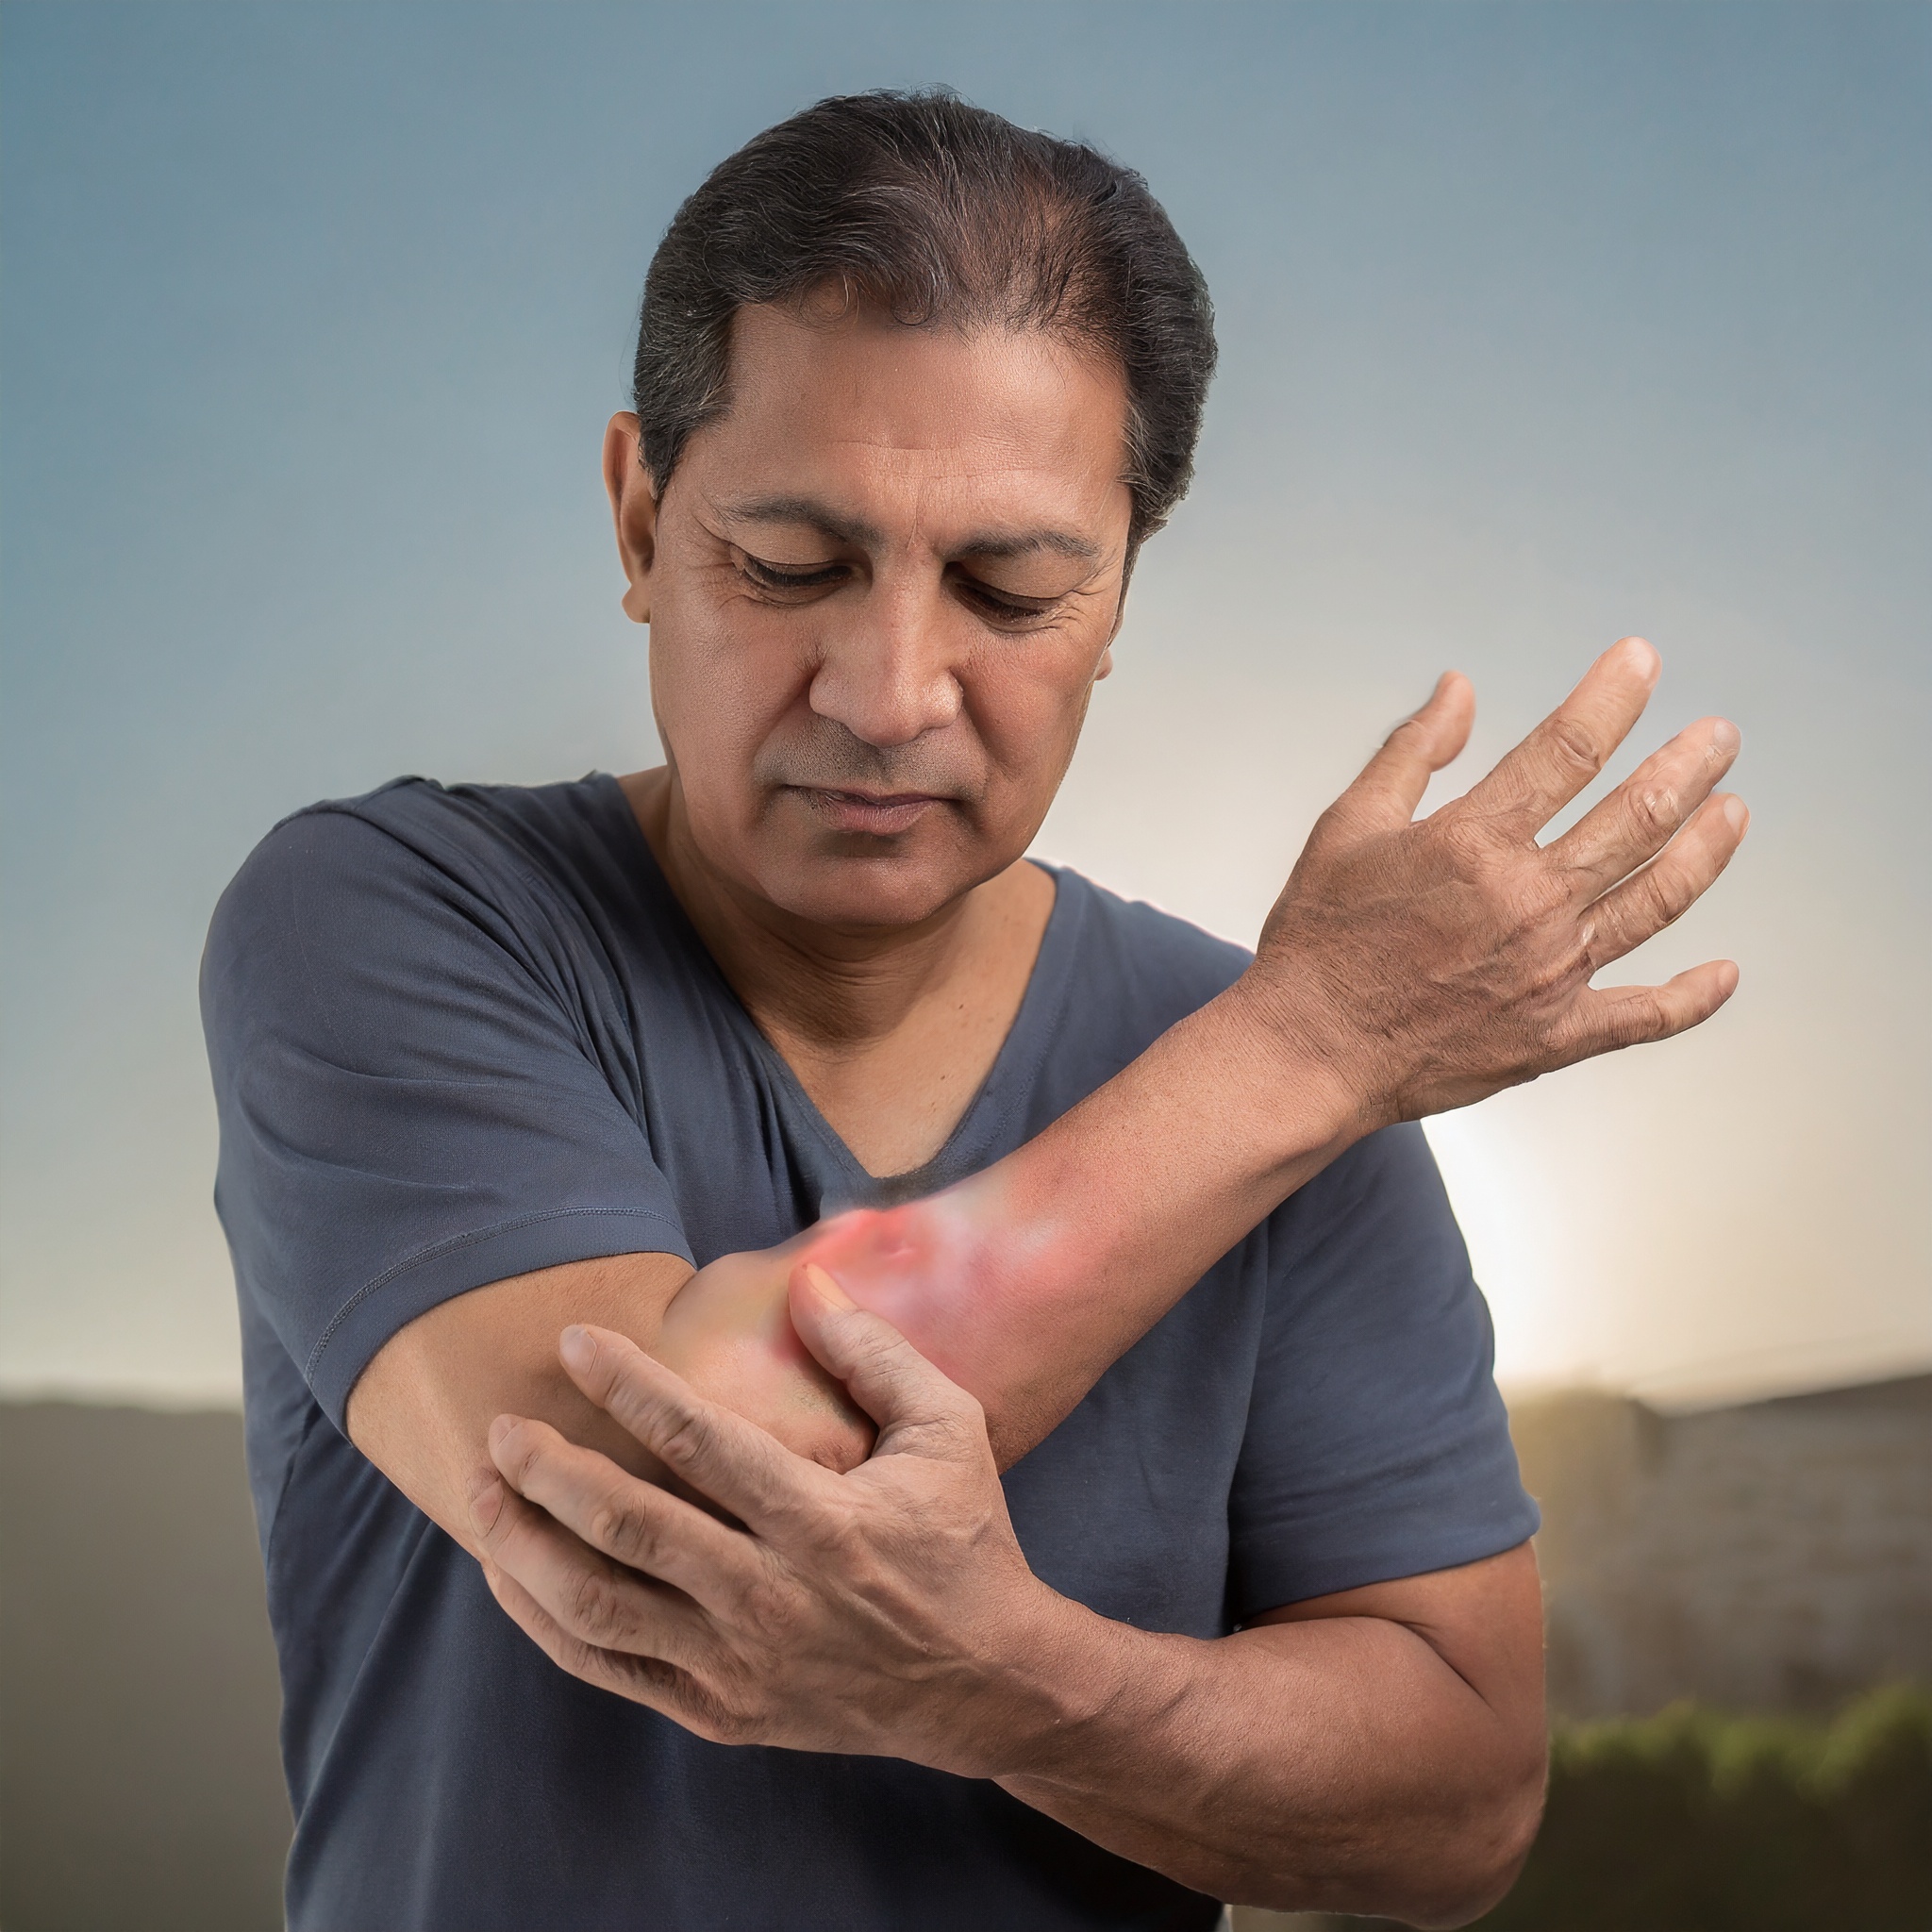 tratamiento en artritis reumatoide